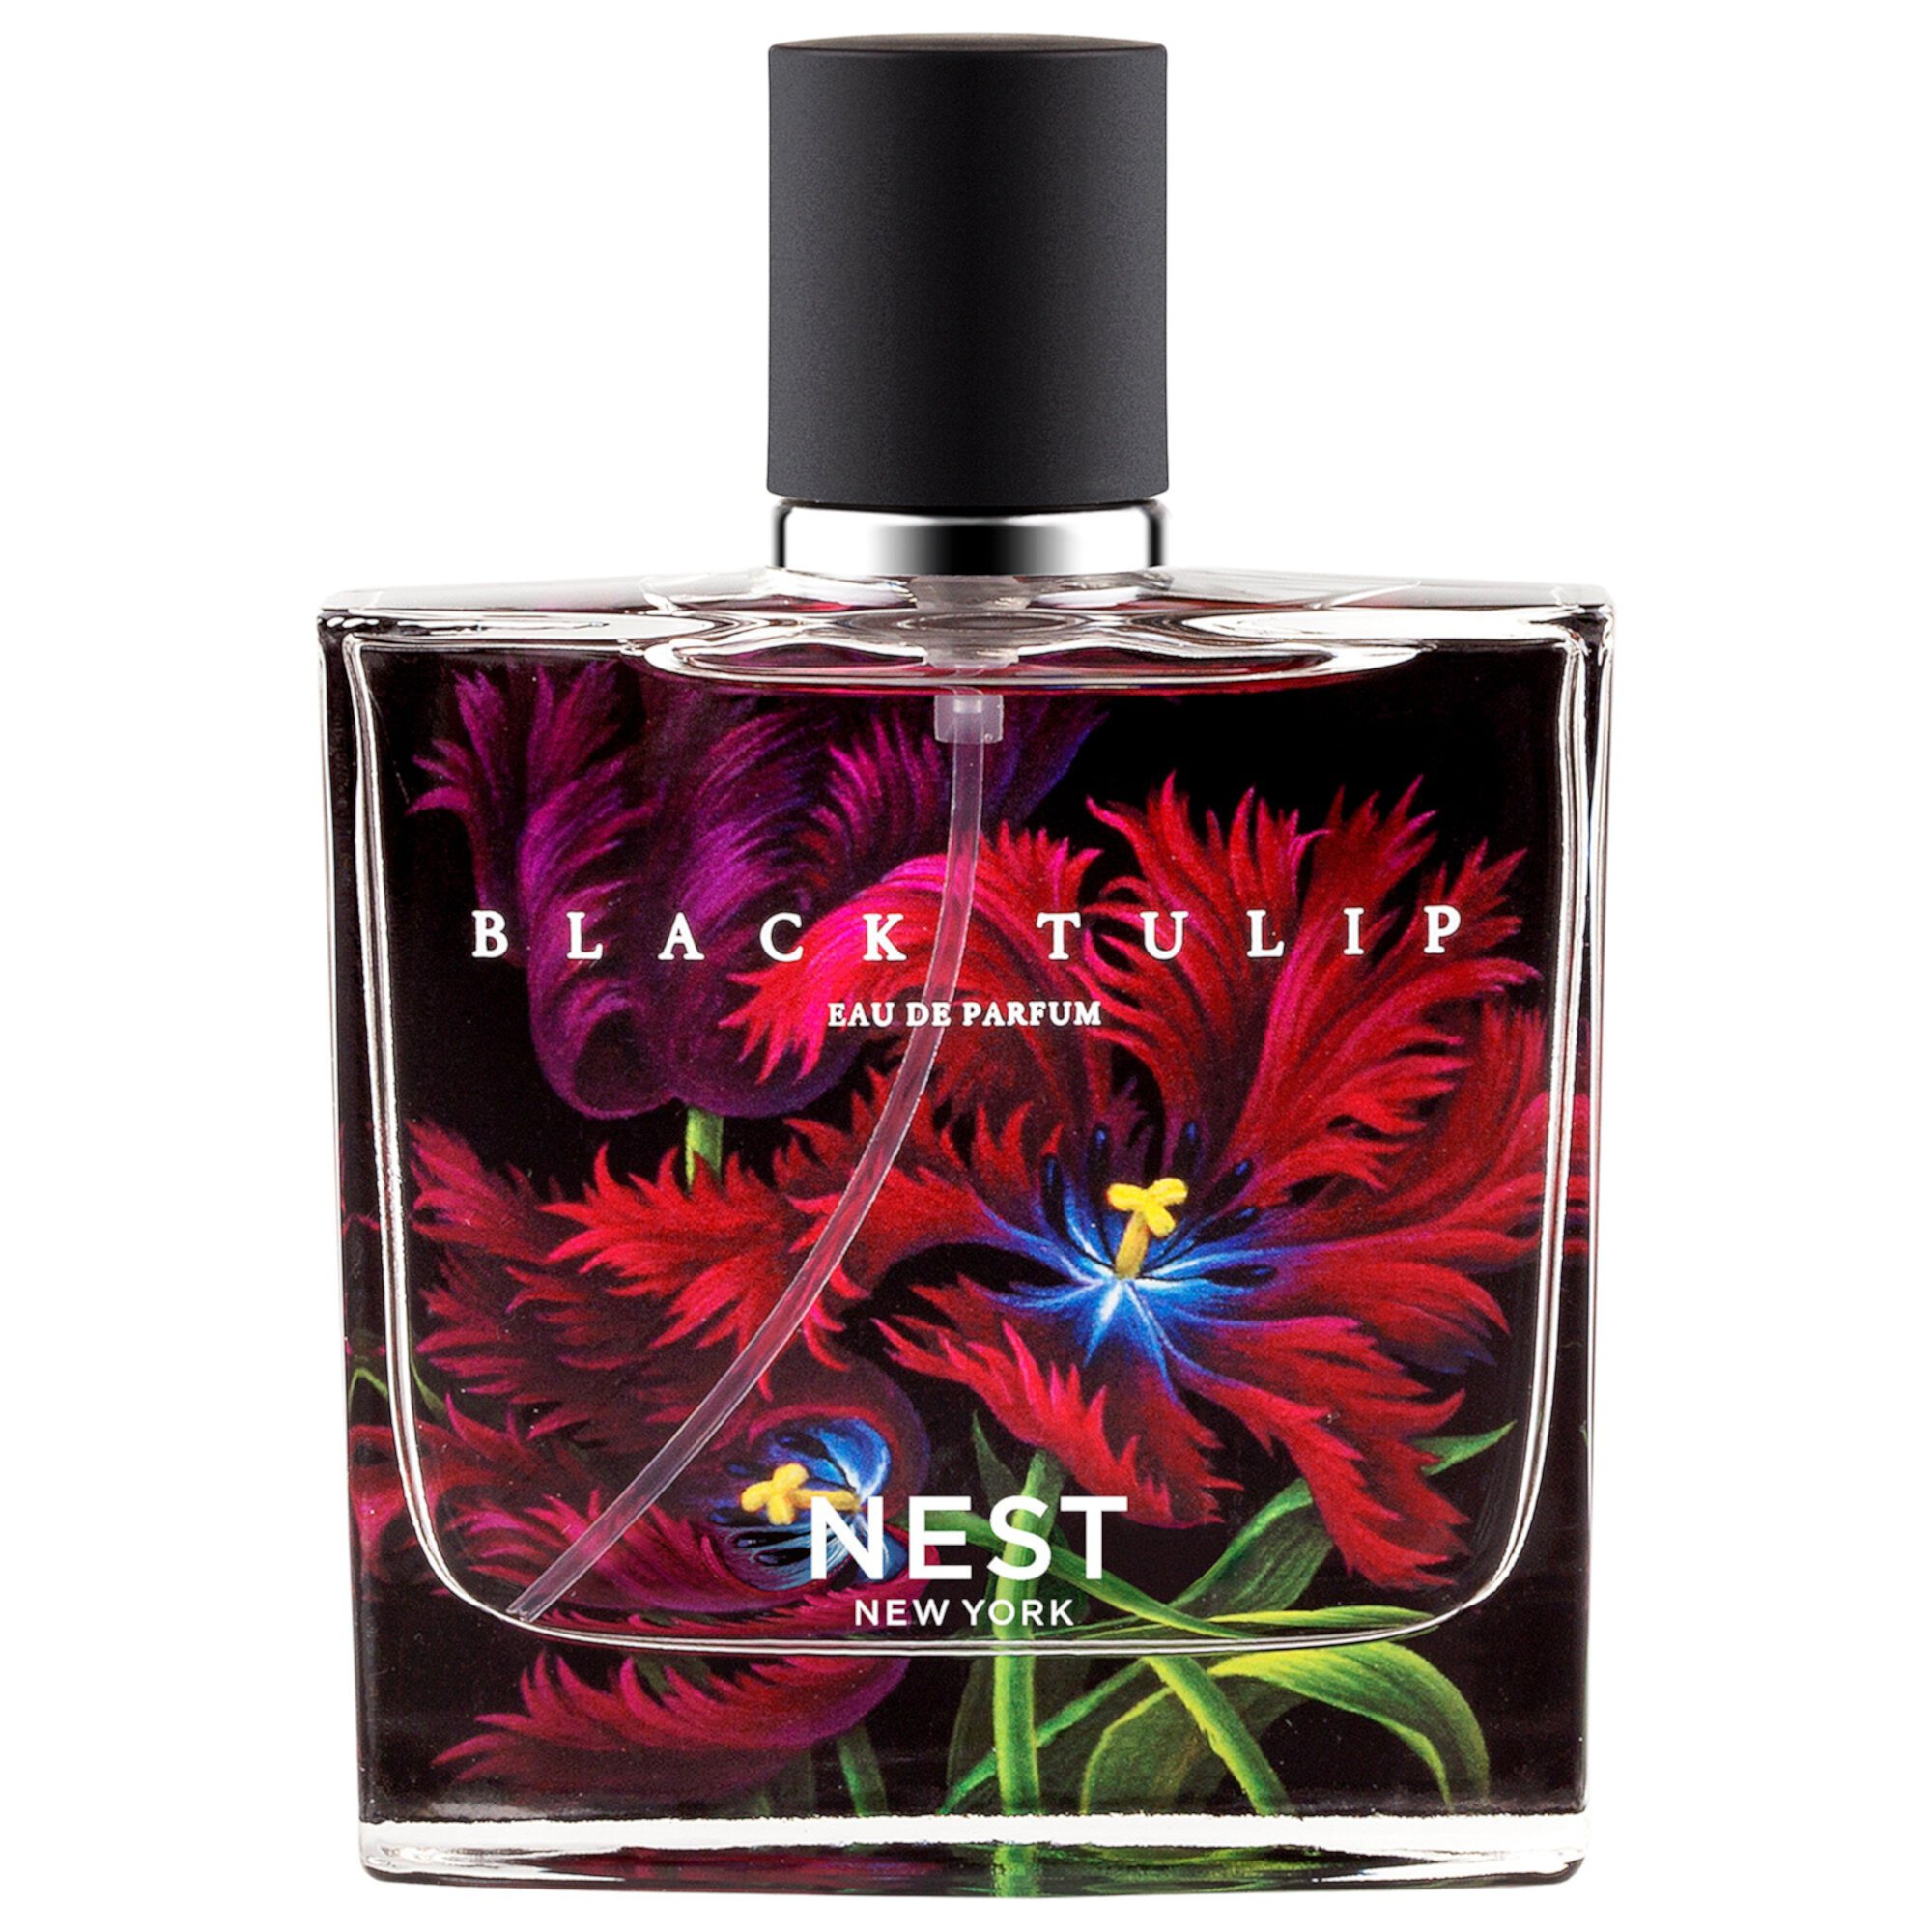 Black Tulip Eau de Parfum Nest New York